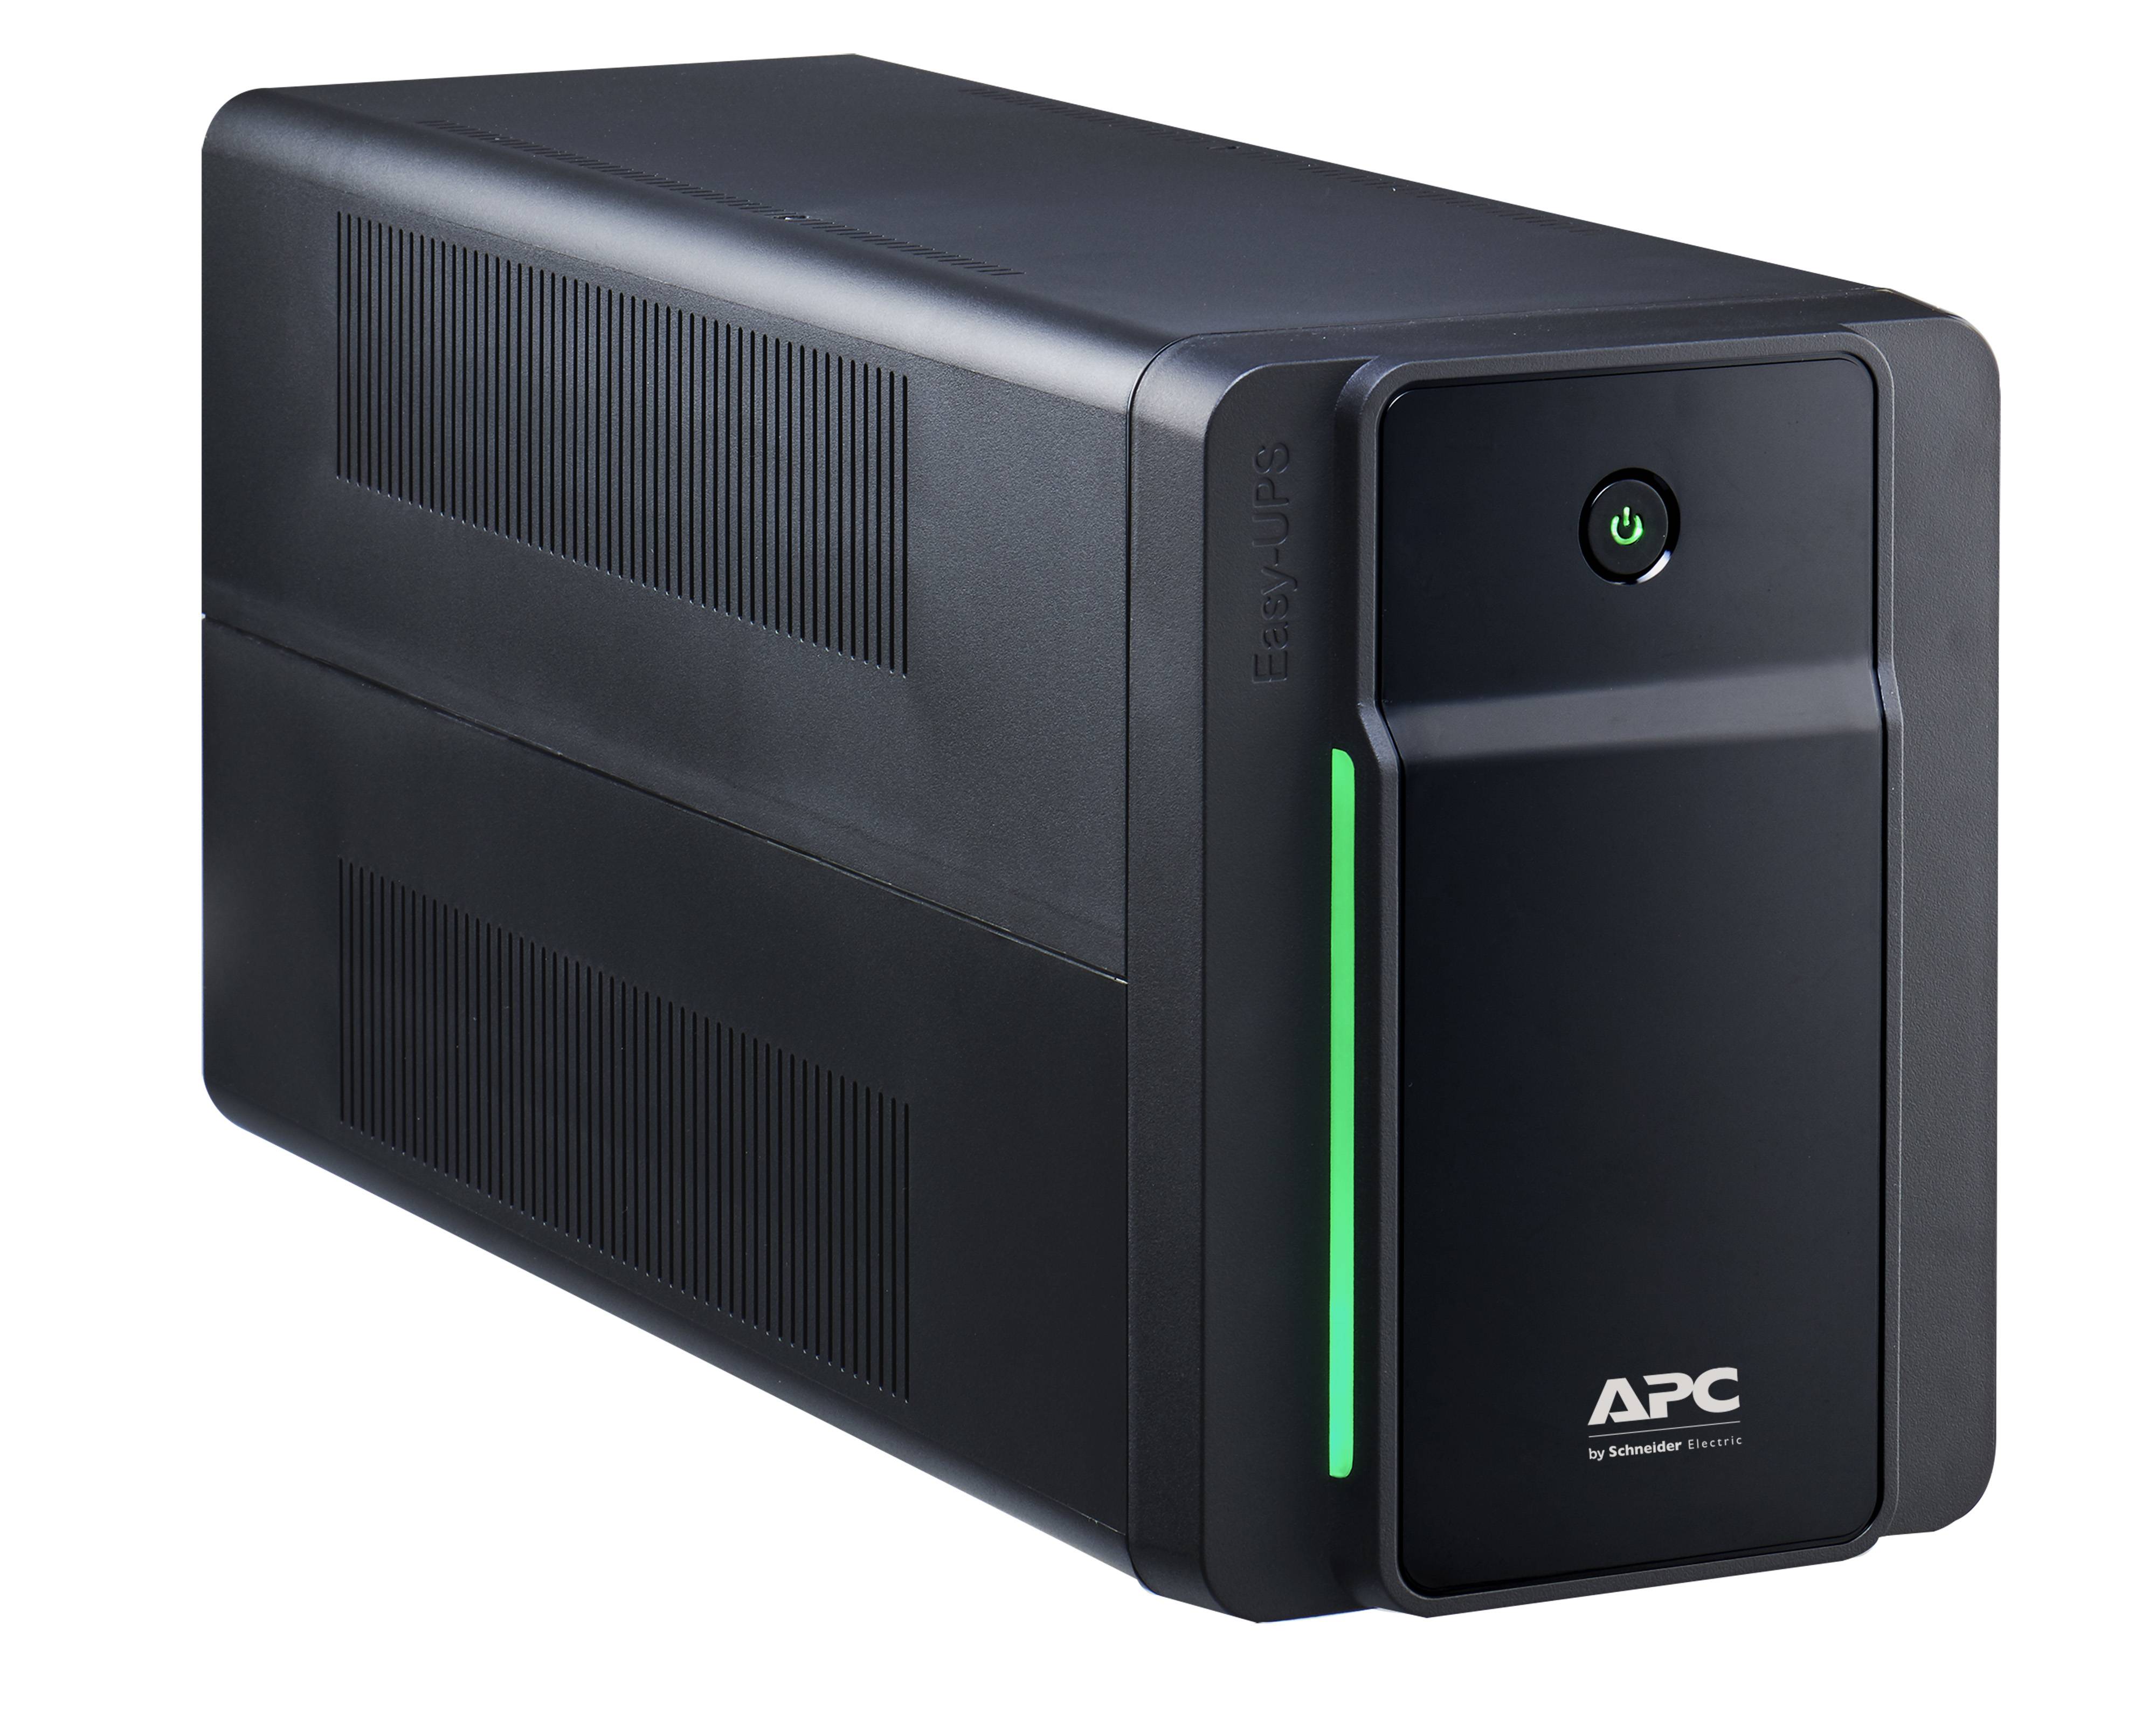 Rca Informatique - Image du produit : APC EASY UPS 1600VA 230V AVR IEC SOCKETS